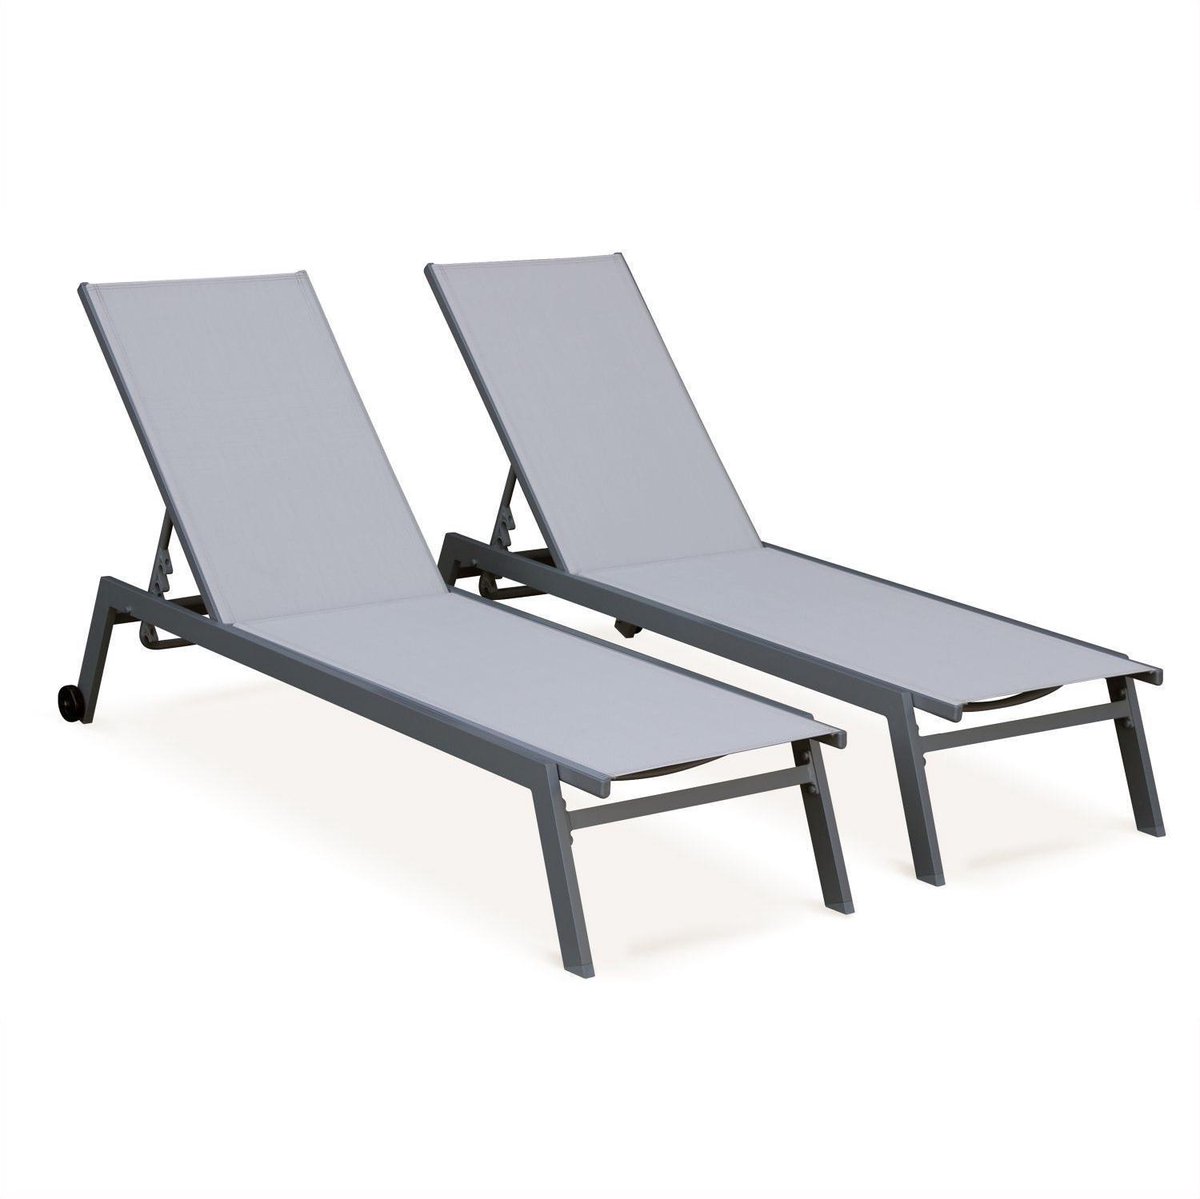 ELSA - Set van 2 ligstoelen van aluminium en textileen, ligbed multipositioneel met wieltjes, kleur grijs/lichtgrijs